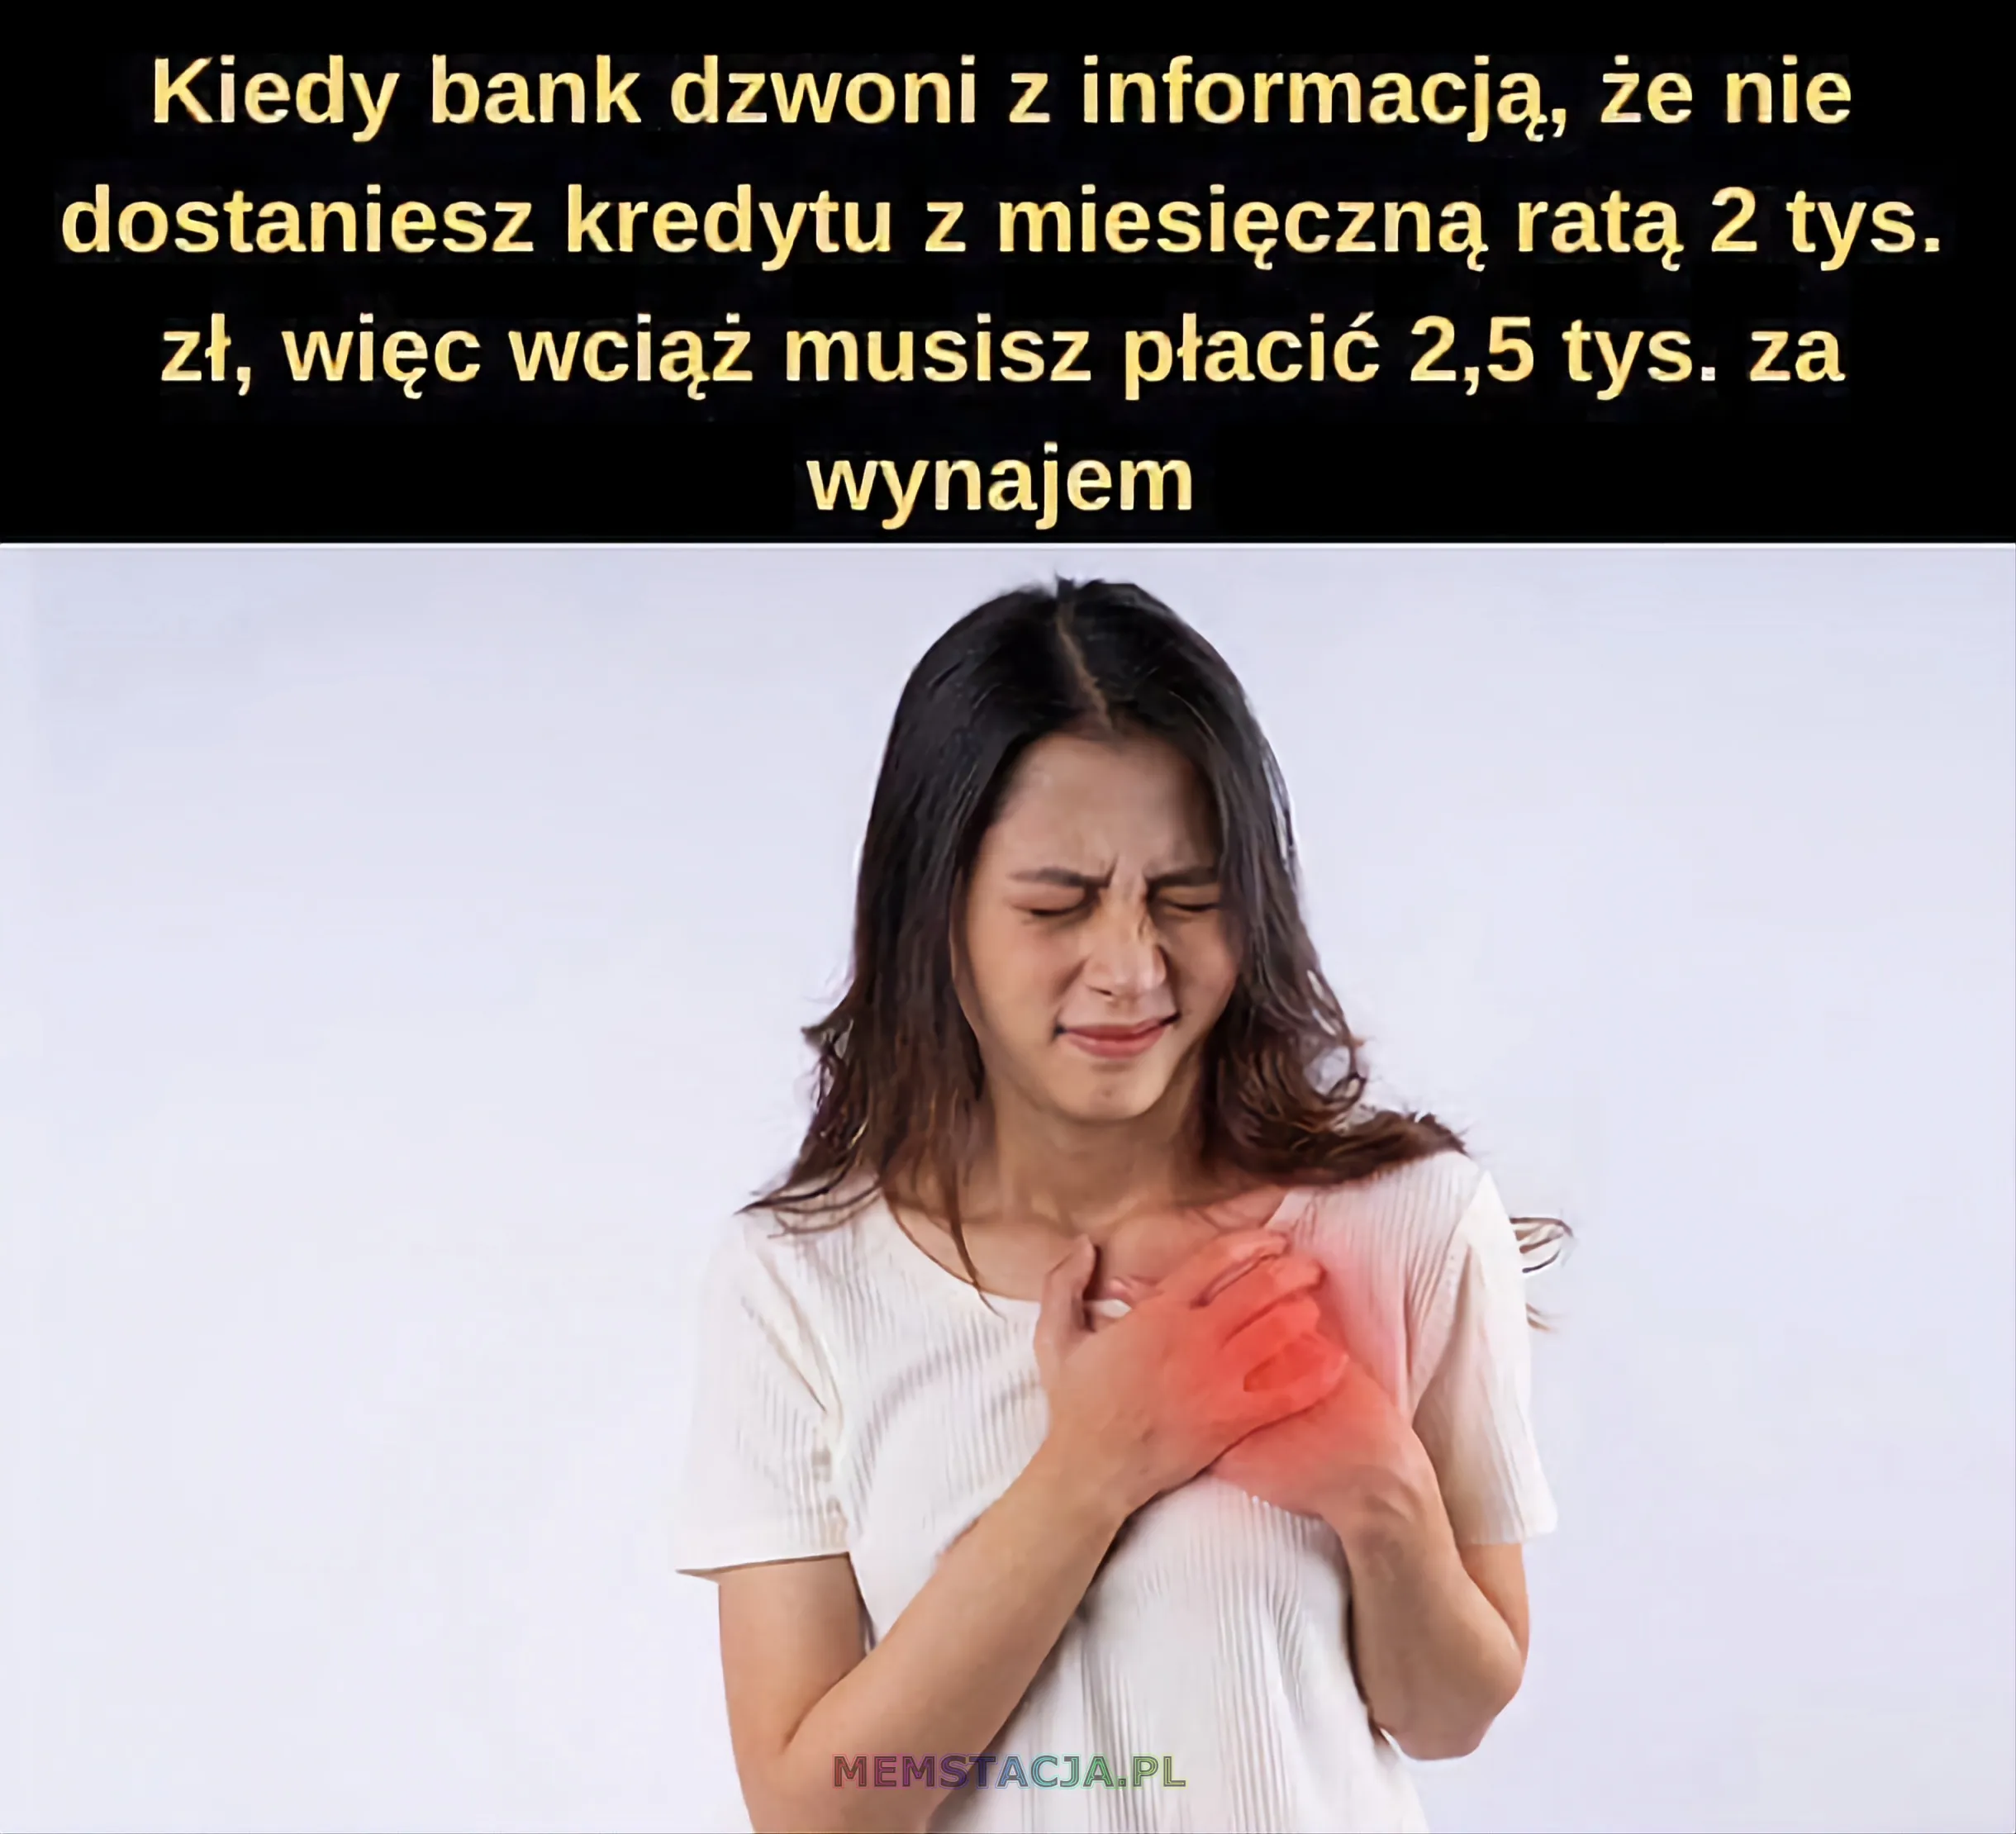 Mem przedstawiający postać trzymającą się za serce: 'Kiedy bank dzwoni z informacją, że nie dostaniesz kredytu z miesięczną ratą 2 tys. zł, więc wciąż musisz płacić 2,5 tys. za wynajem'